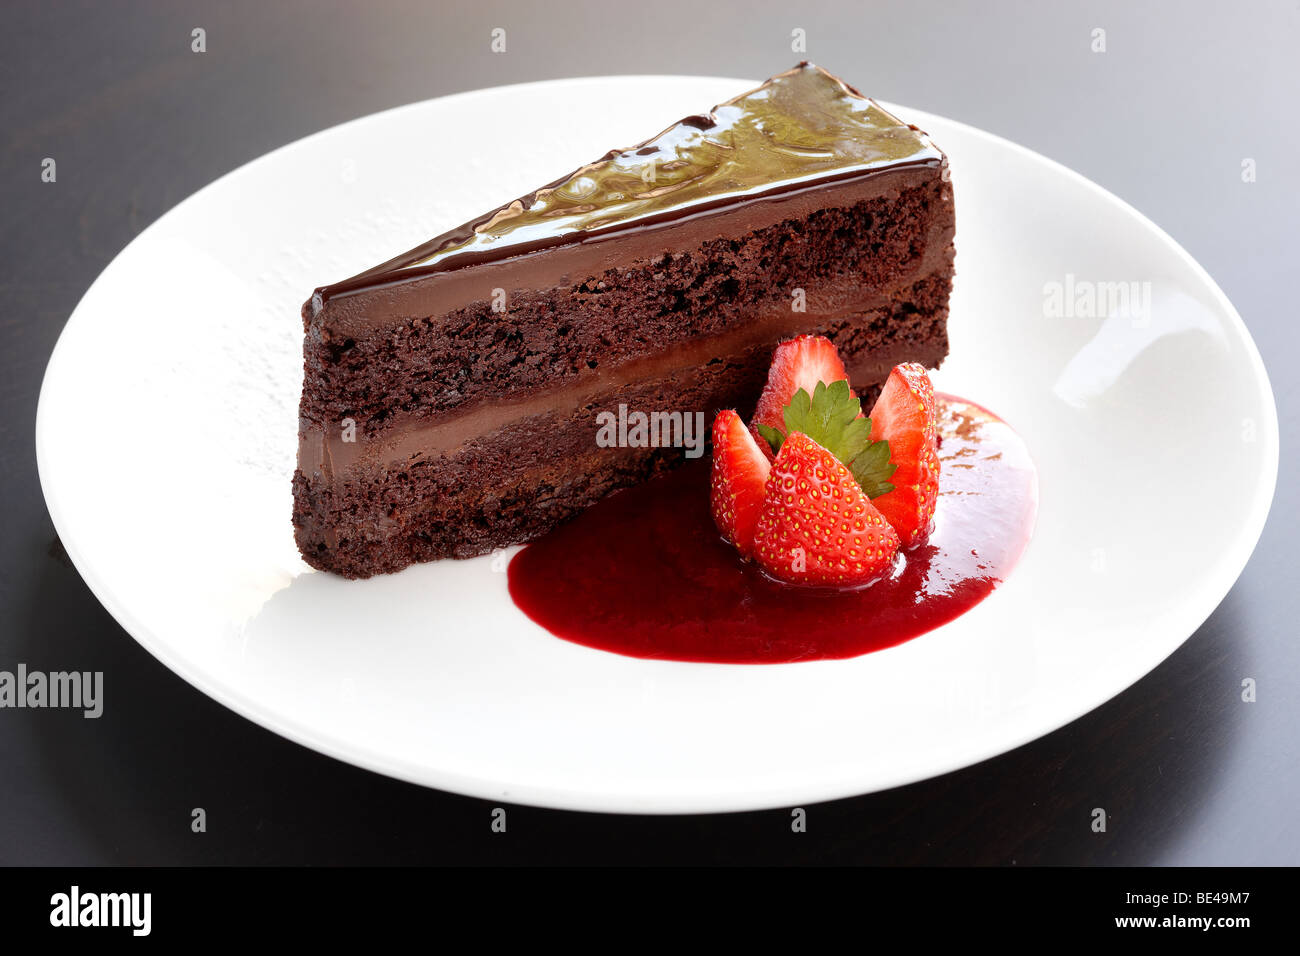 Riche au chocolat avec coulis de fraises Banque D'Images